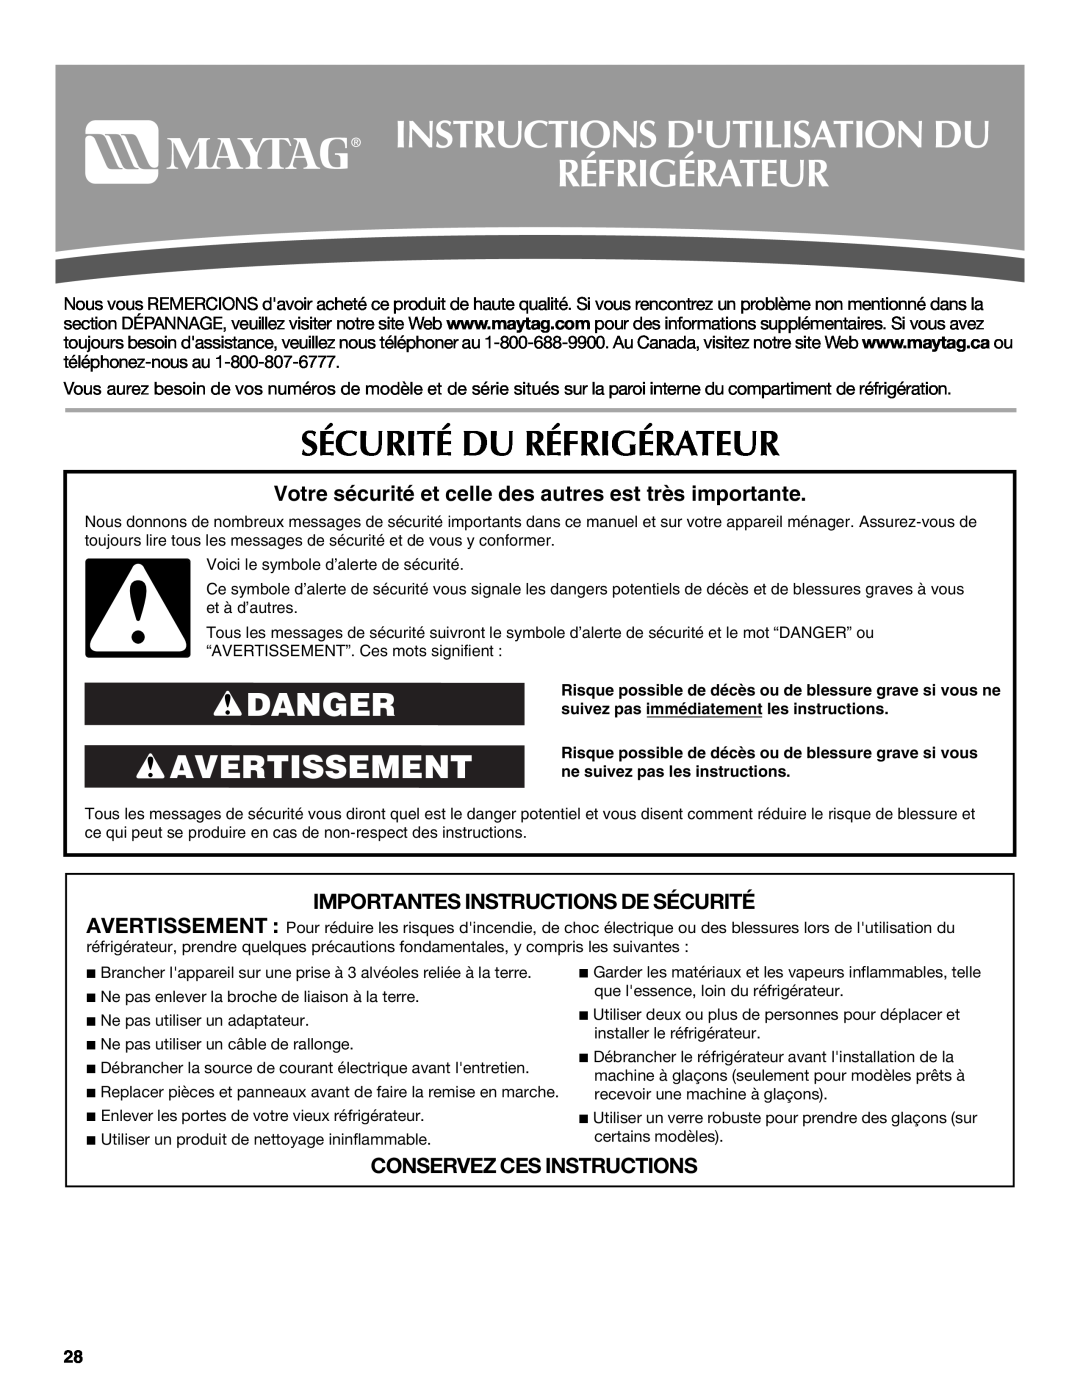 Maytag MSD2254VEW Instructions Dutilisation Du Réfrigérateur, Sécurité Du Réfrigérateur, Danger Avertissement 